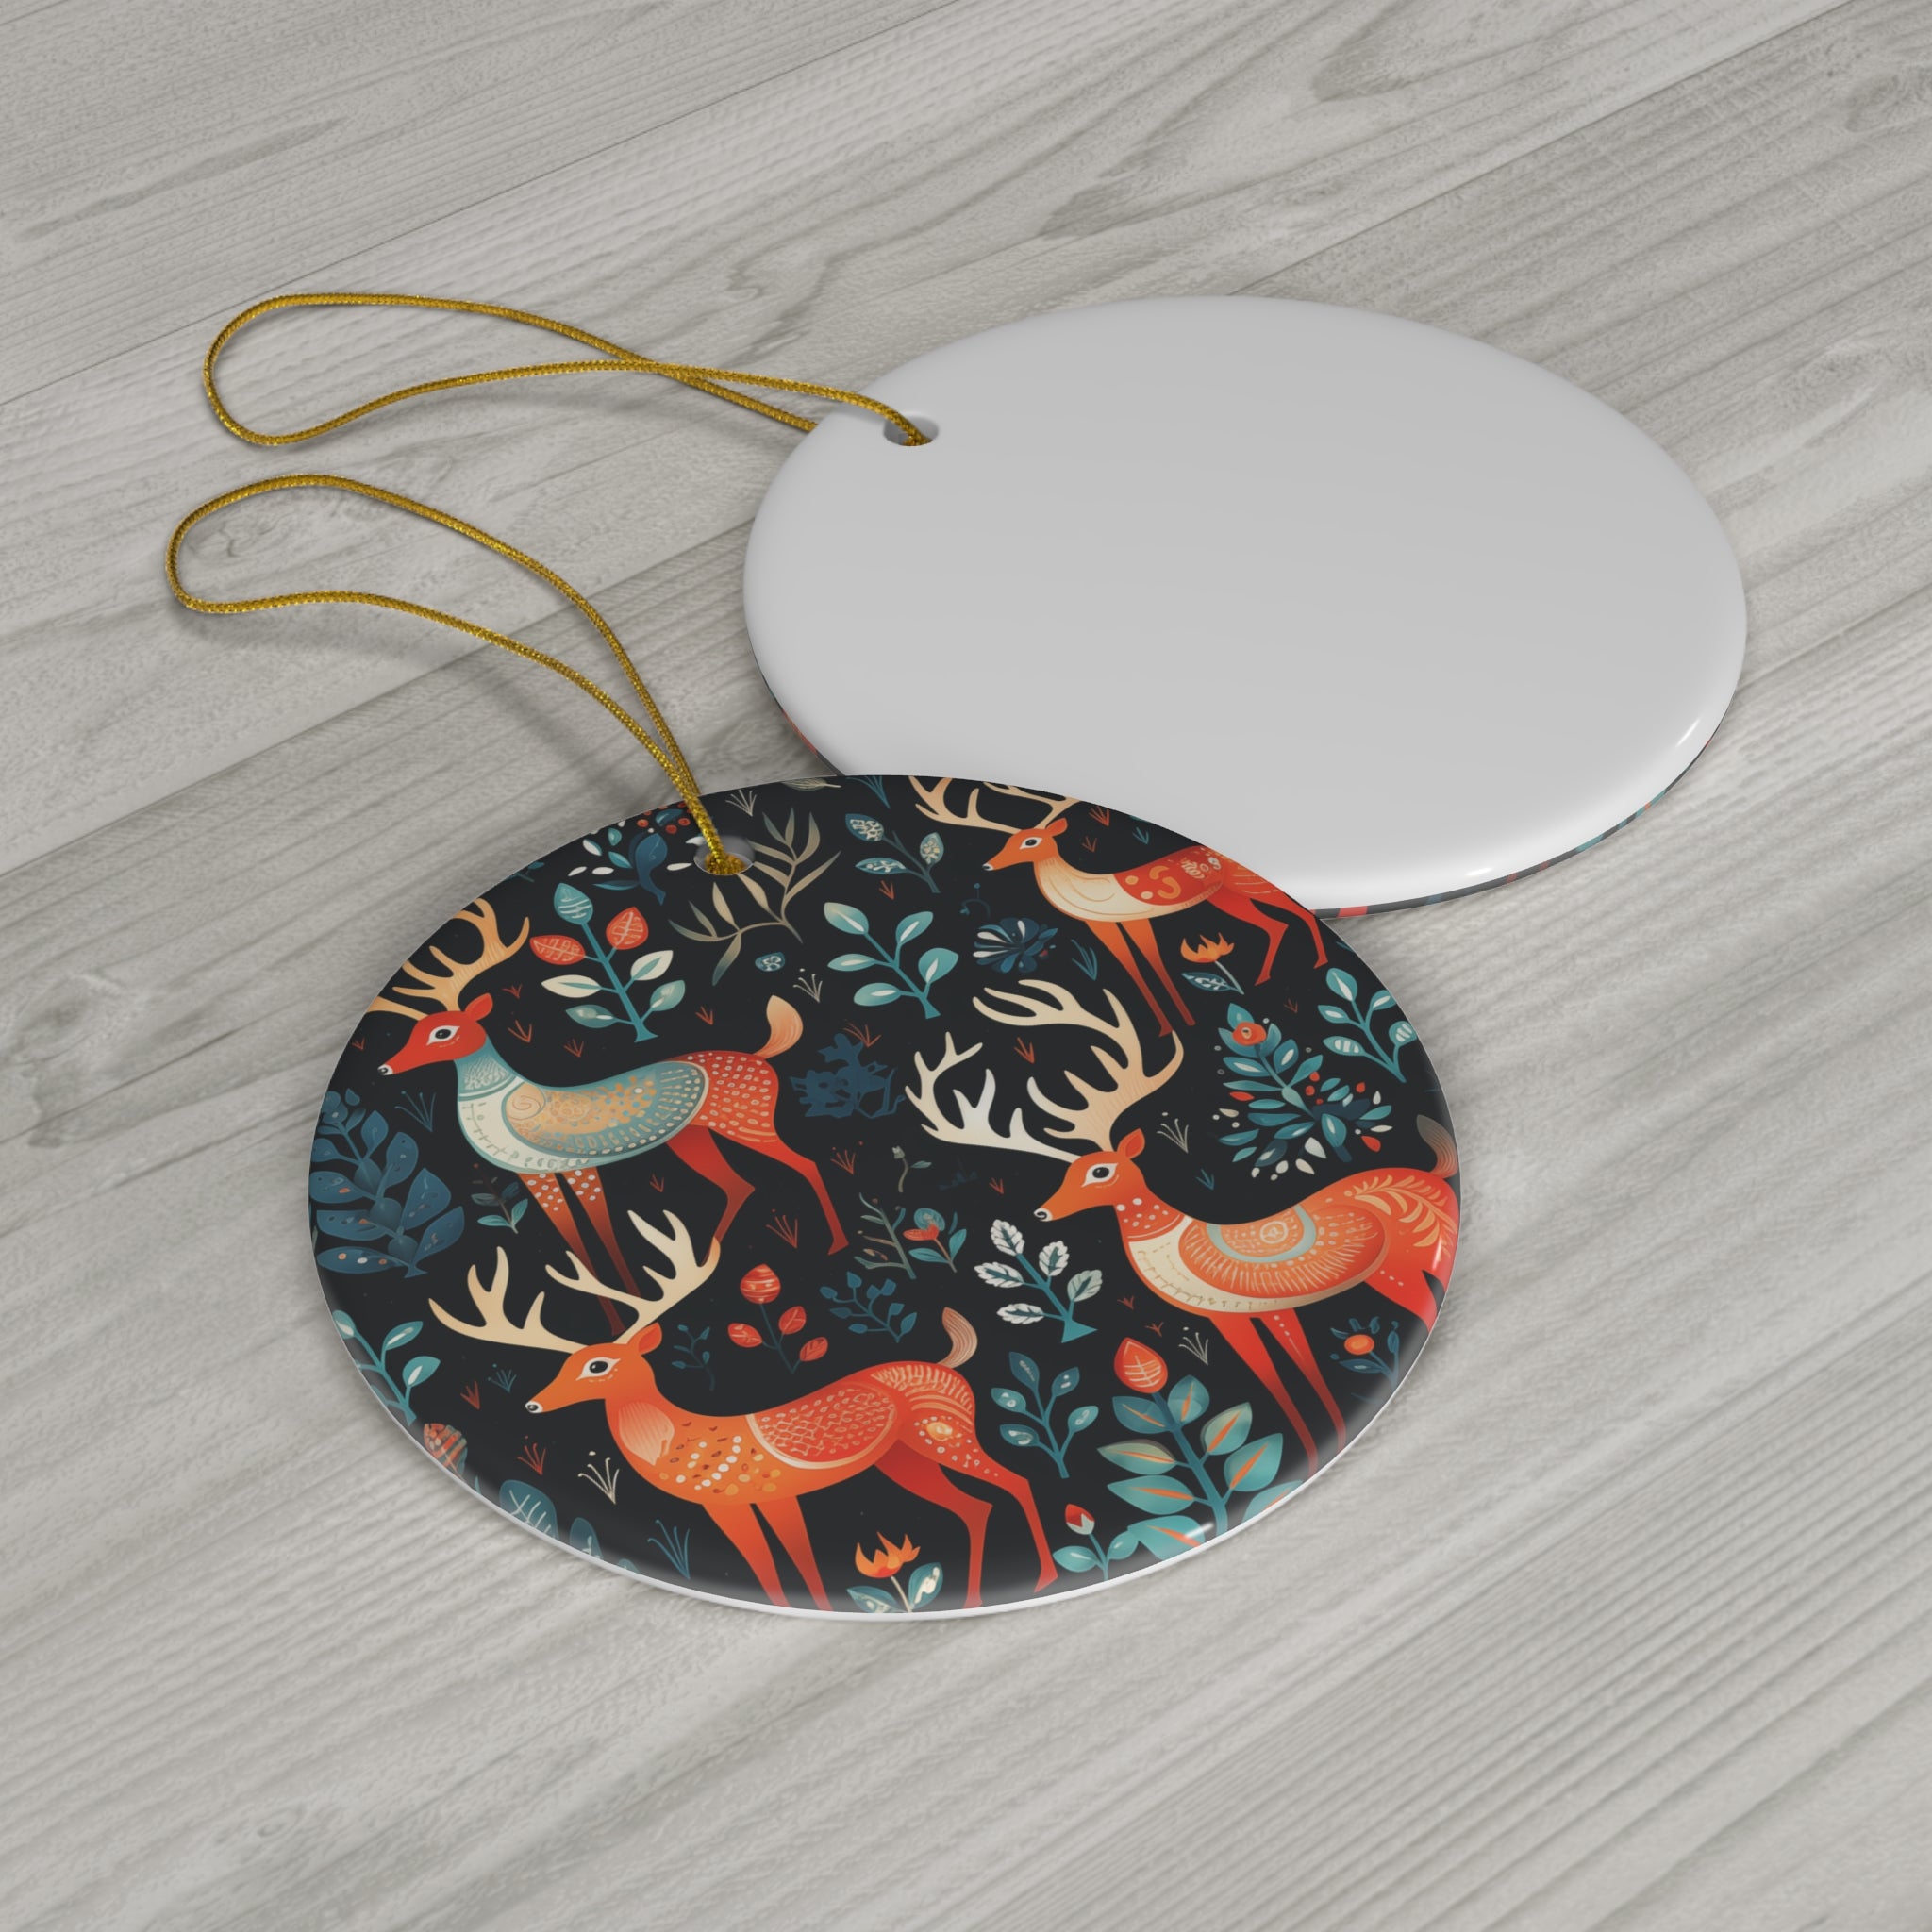 Reindeer Rhythms - Ceramic Ornament